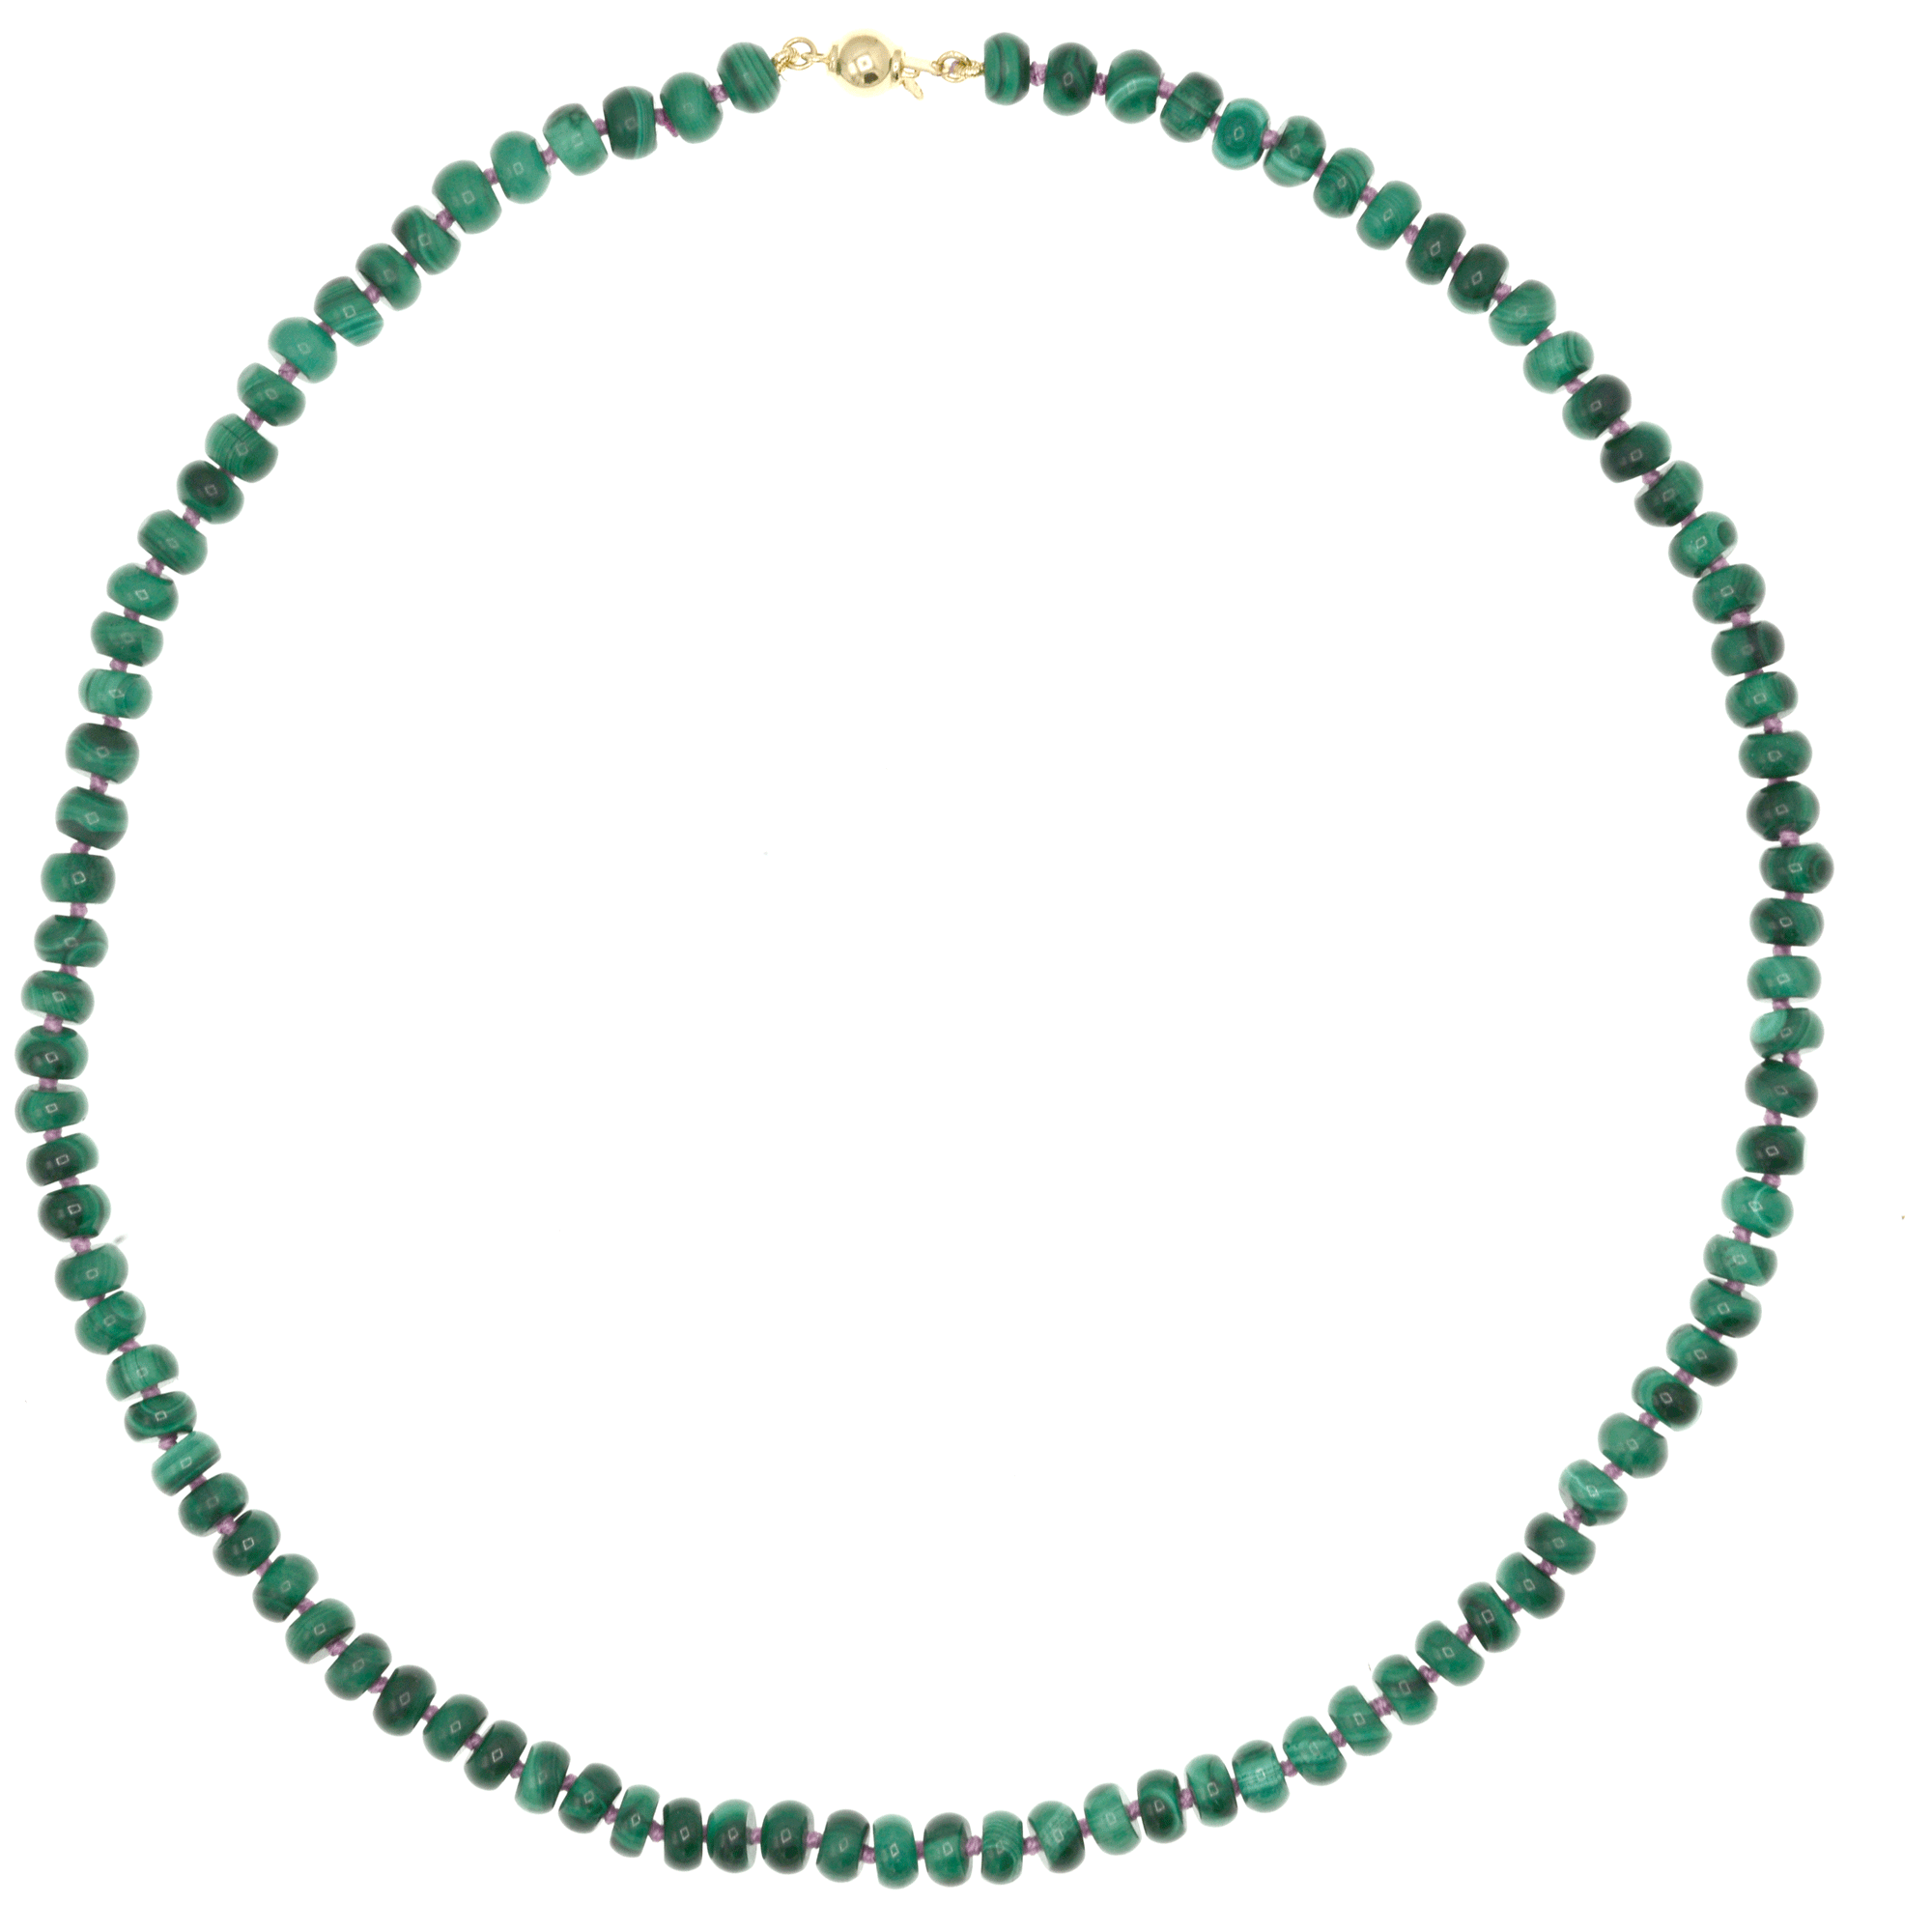 Beaded Malachite Necklace Malachite Necklace Malachite Jewelry Healing Jewelry  Malachite Bead Necklace - Etsy